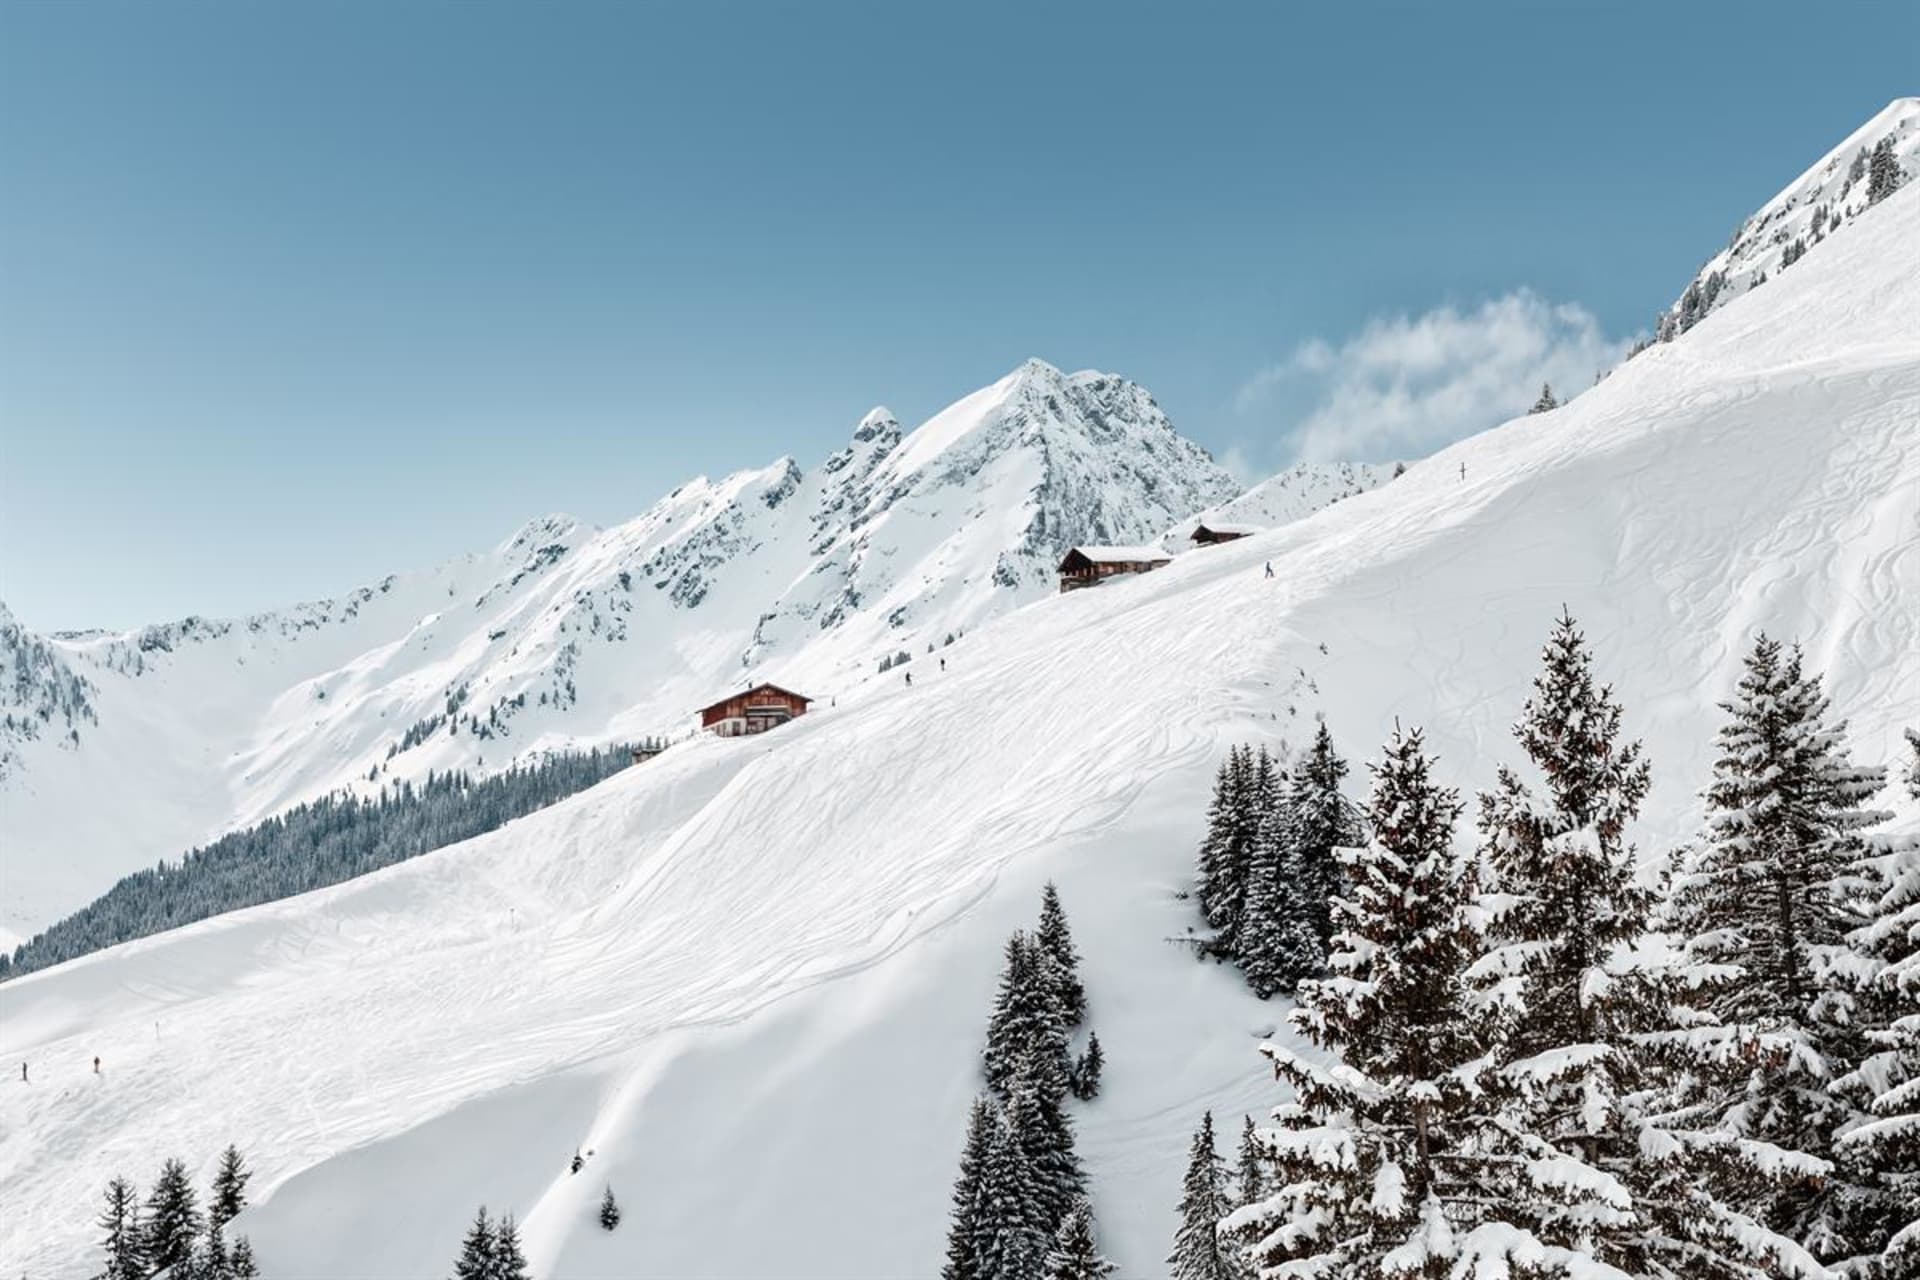 Středisko Saalbach-Hinterglemm nabízí špičkové lyžování